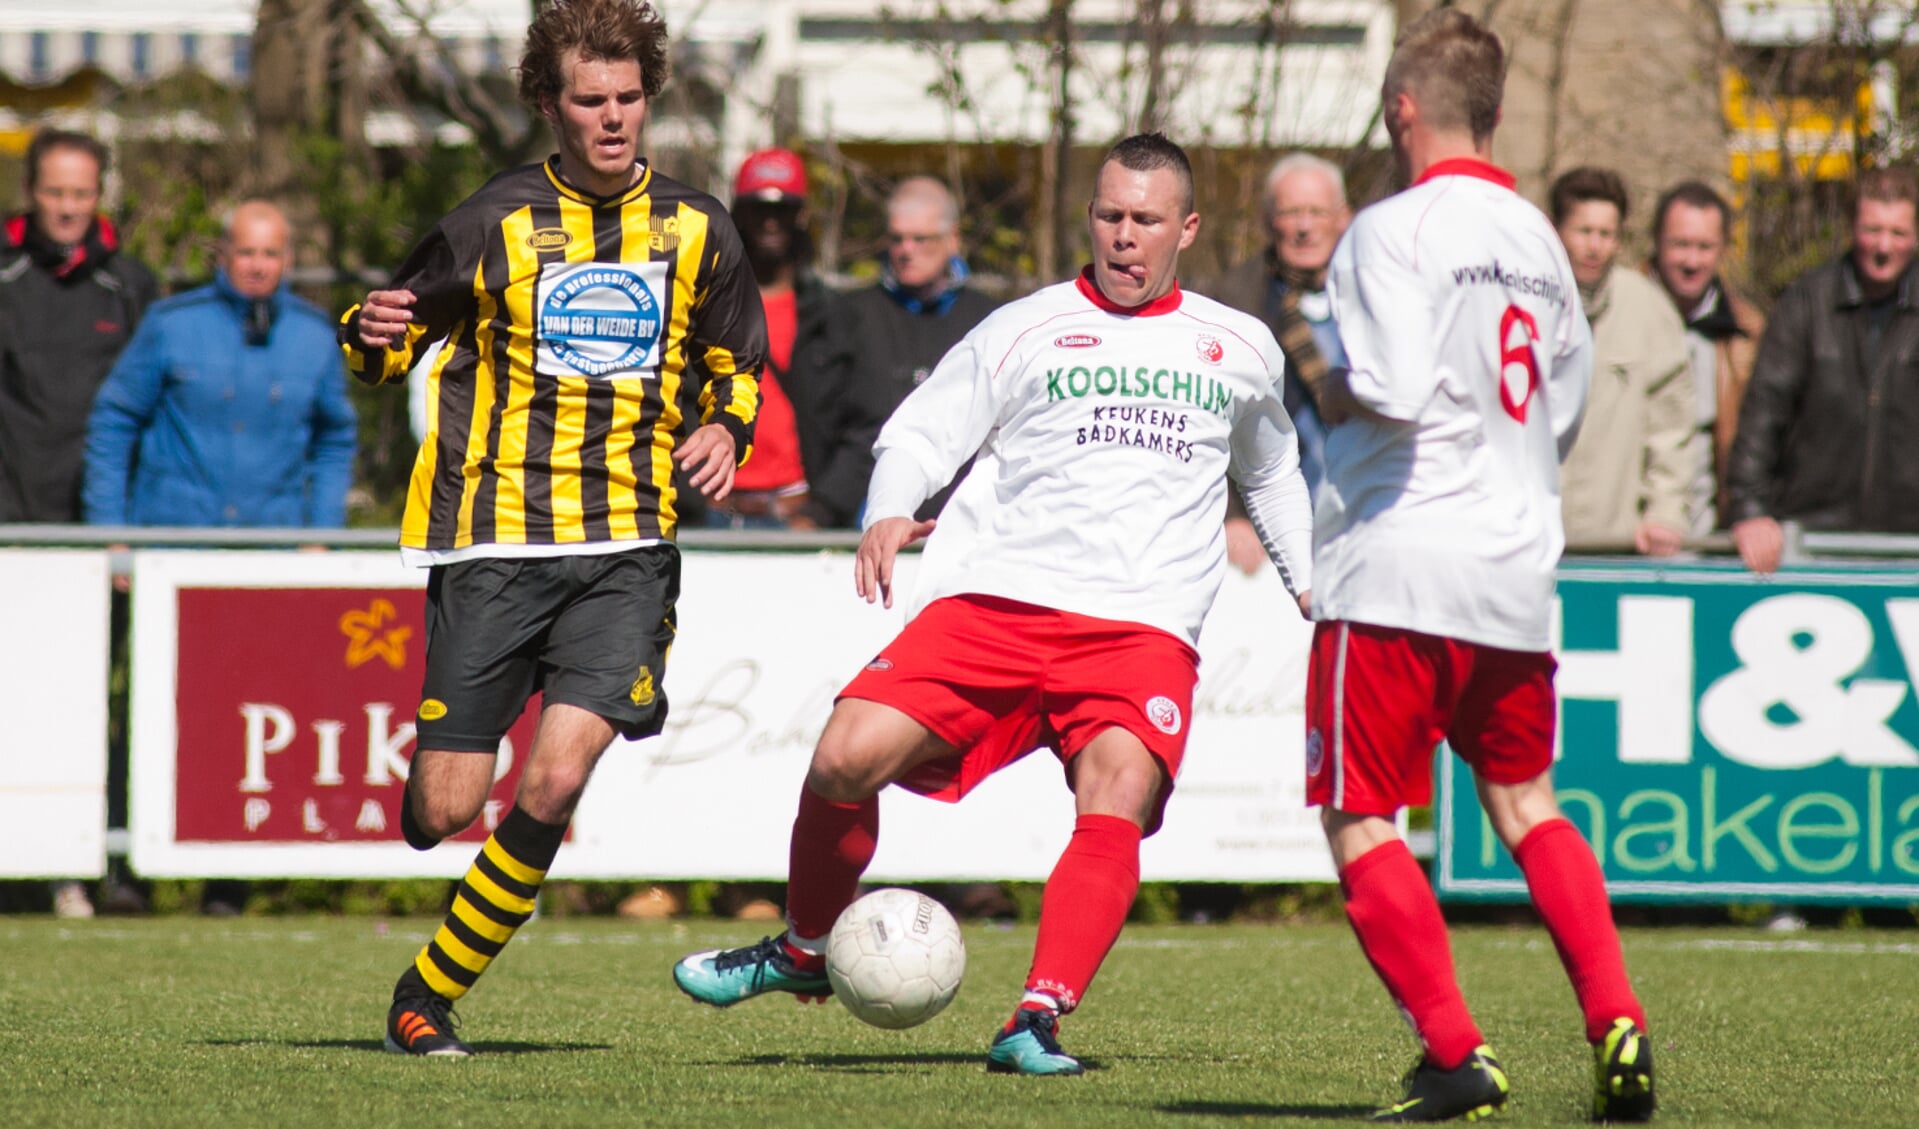 Jacco Wevers werd in het seizoen 2011/2012 topscorer bij RKDEO met 23 goals. Komend seizoen draagt hij weer een rode broek en een wit shirt, maar dan dat van Full Speed. (foto: Roel van Dorsten) 